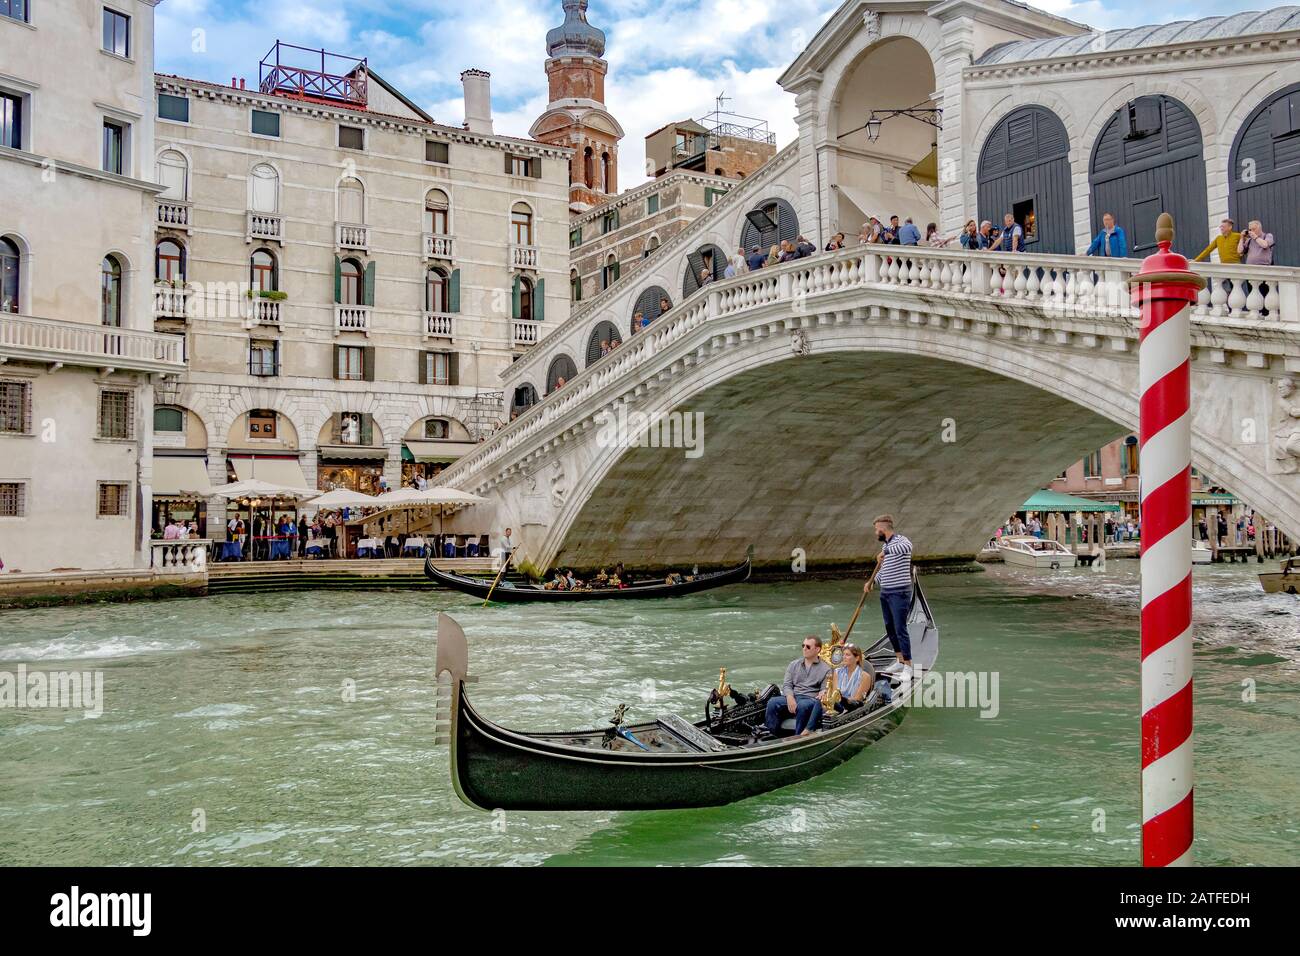 Eine Gondel mit zwei Personen, die eine Gondelfahrt vor der Rialto-Brücke machen, die älteste von vier Brücken, die den Canal Grande in Venedig, Italien, überqueren Stockfoto